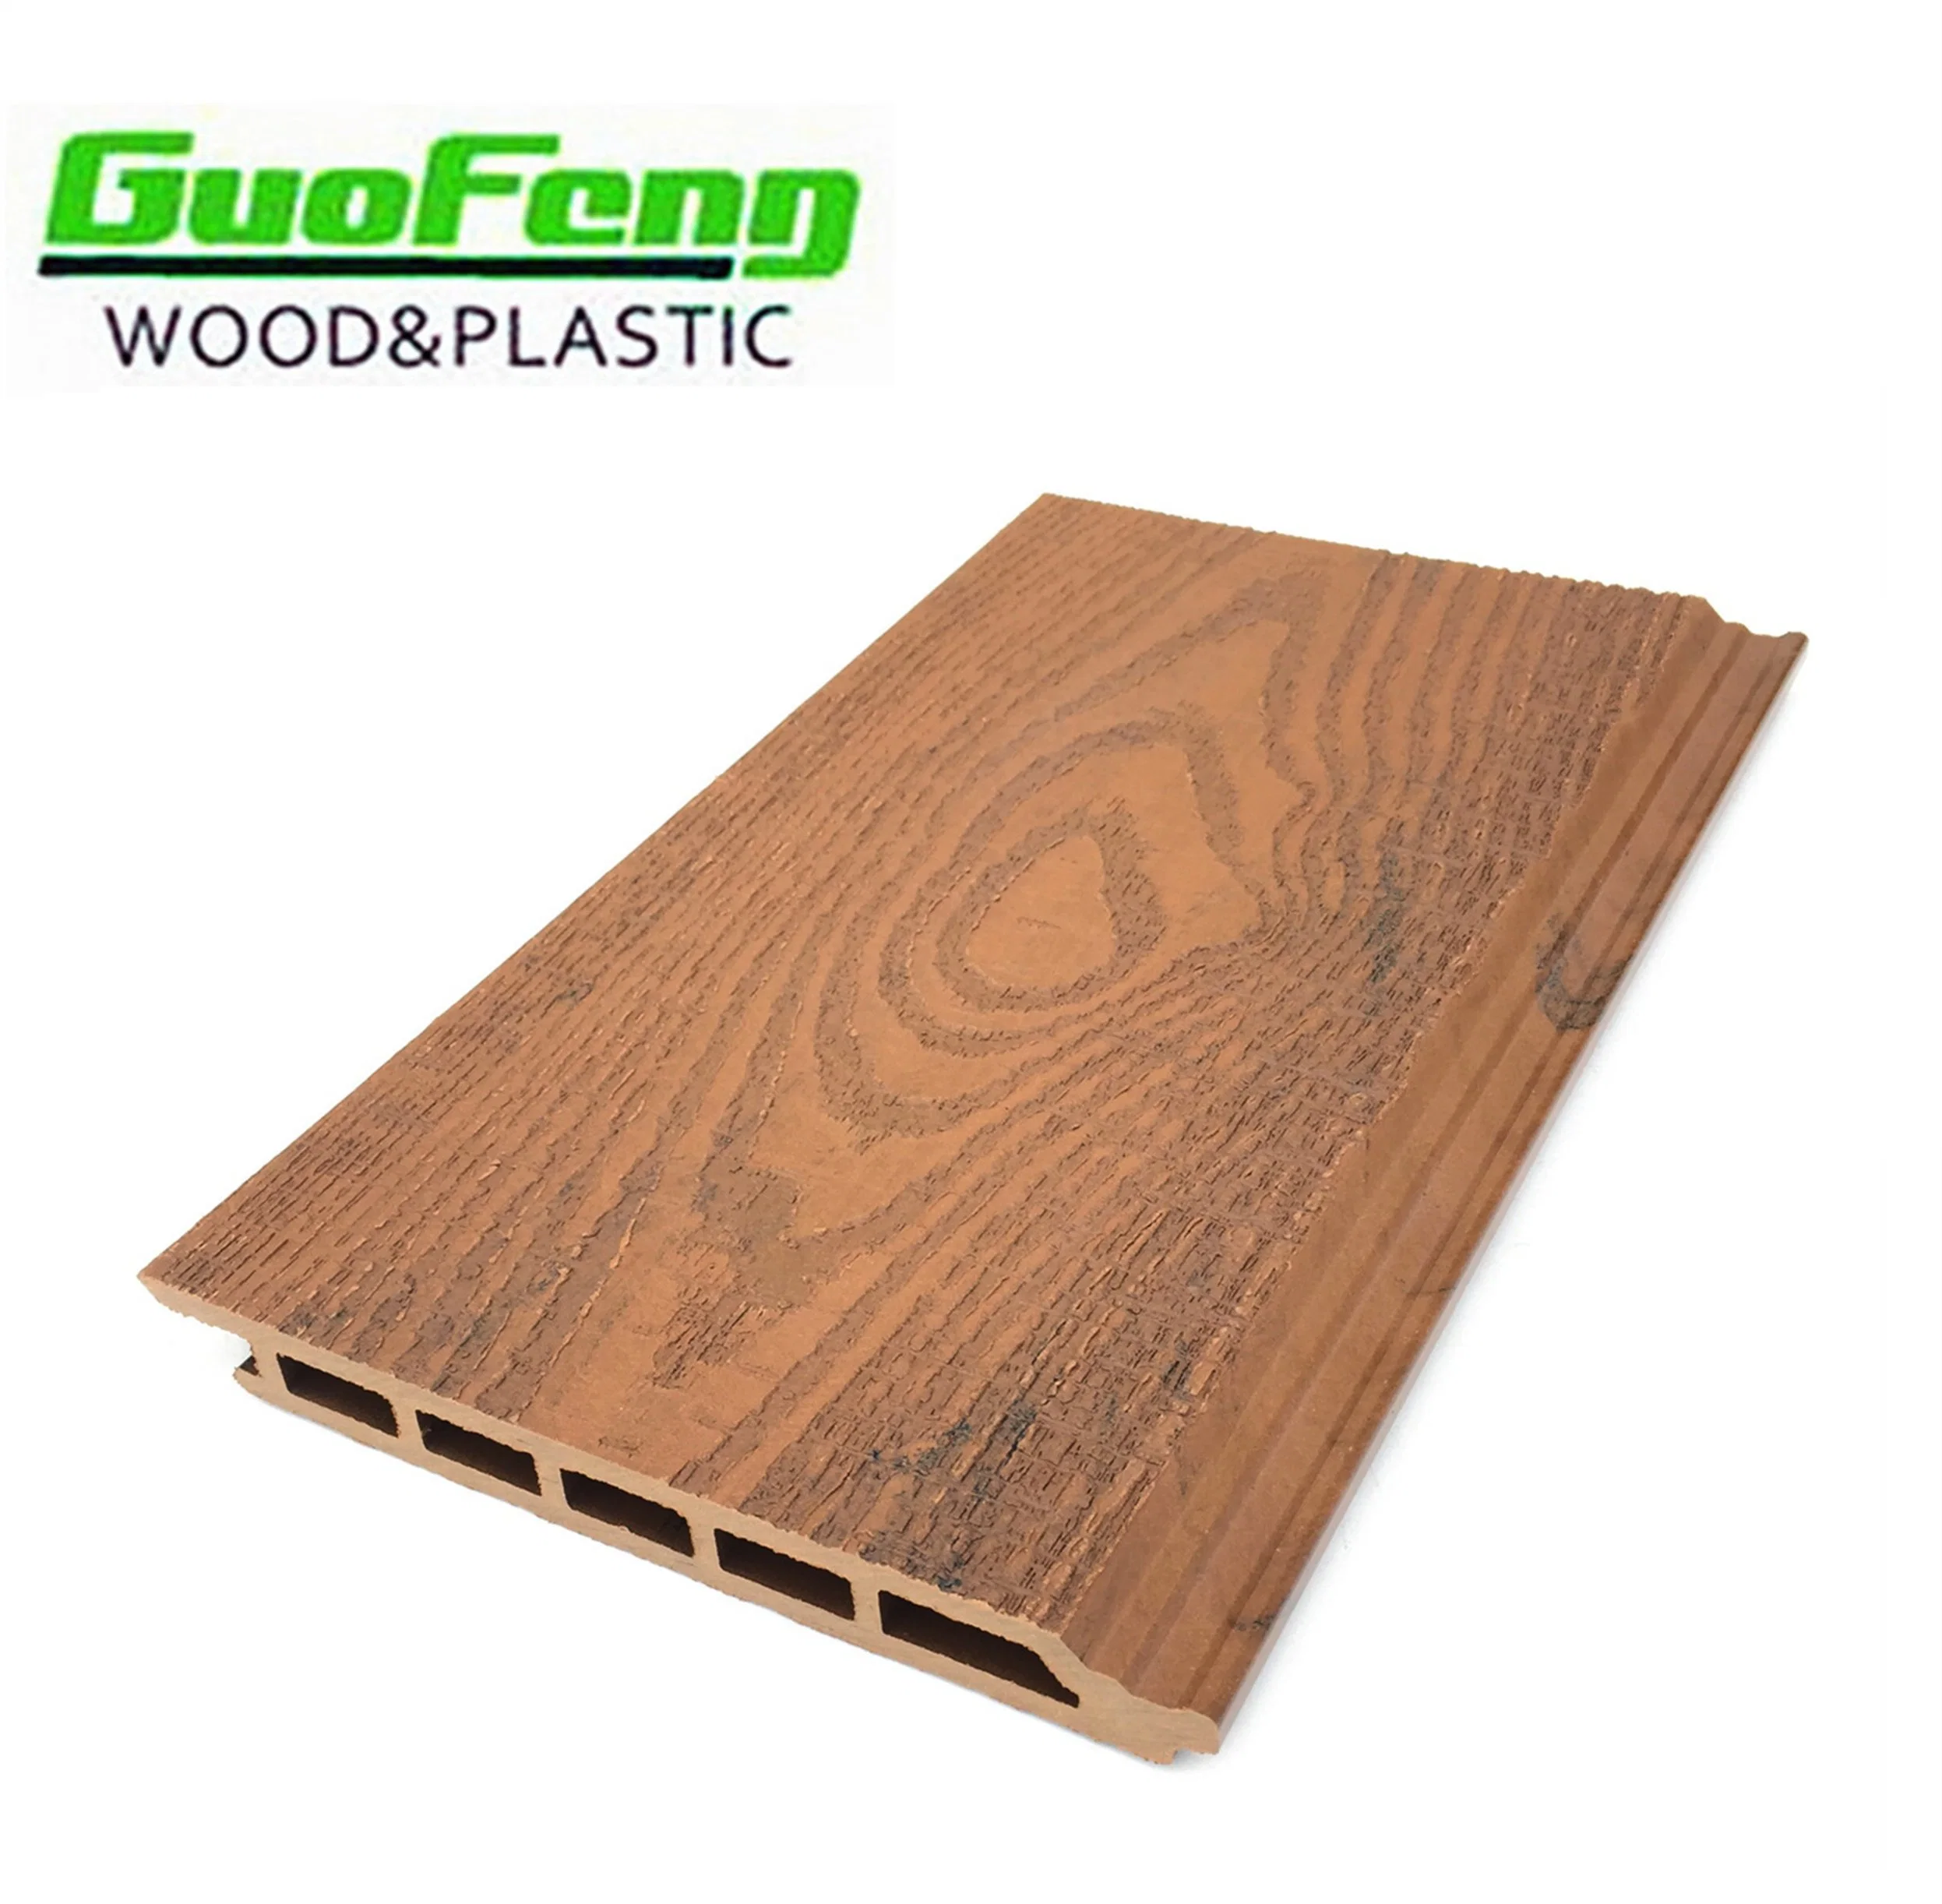 La madera exterior compuesto de plástico de pared de WPC Tablero de Control Panel de WPC decorativo Panel de revestimiento de la casa impermeable